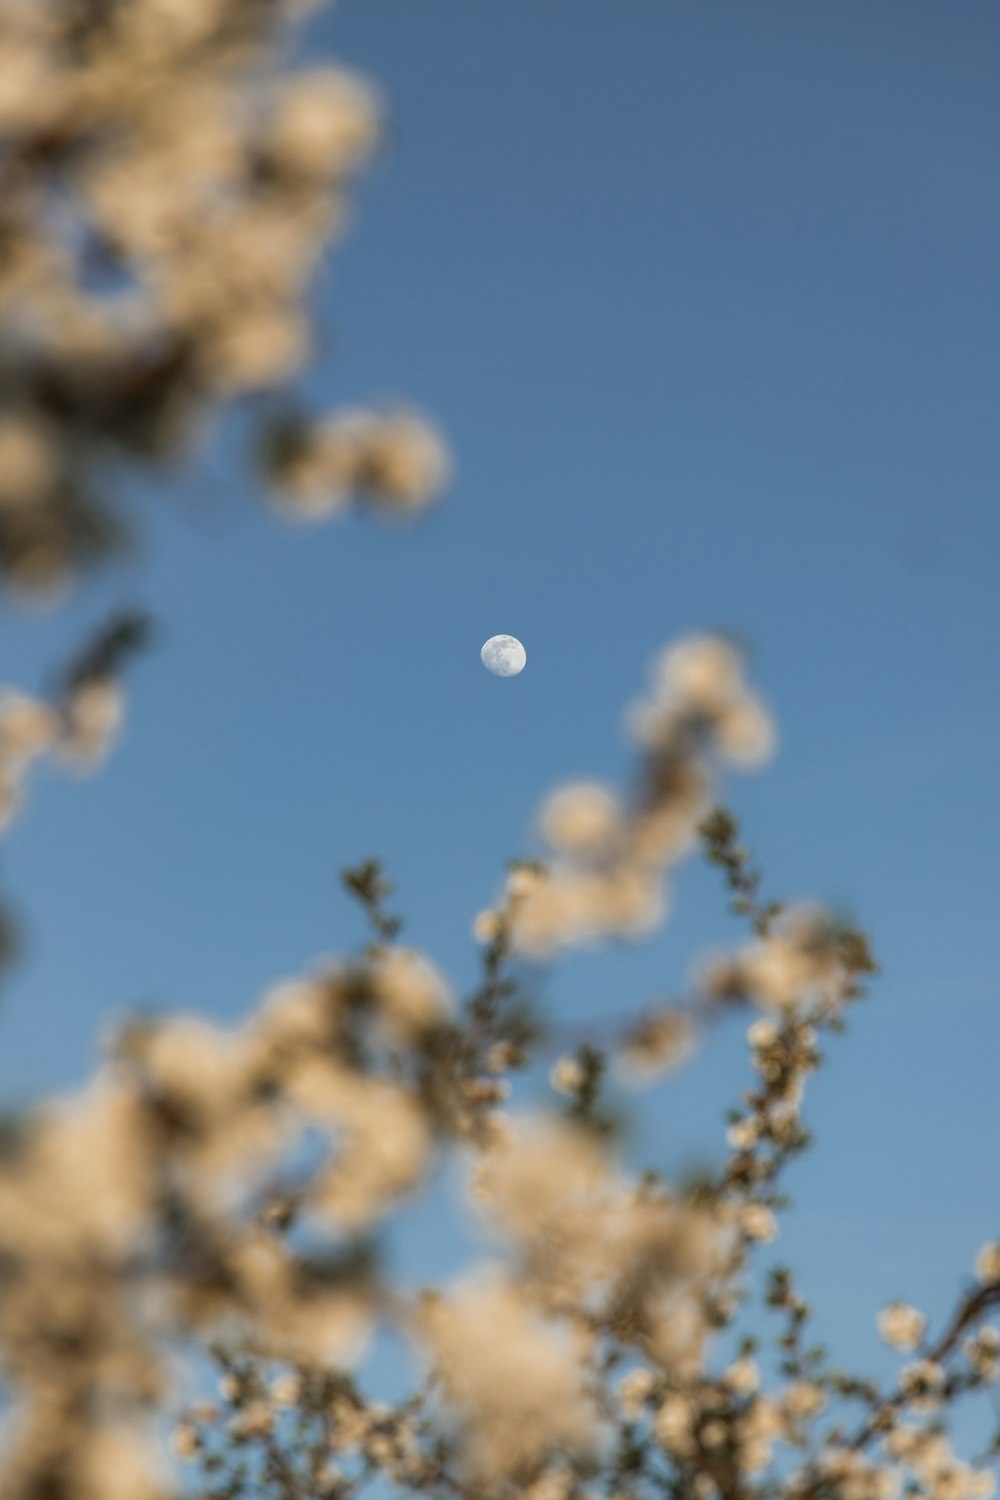 Der Mond ist durch die Äste eines Baumes zu sehen